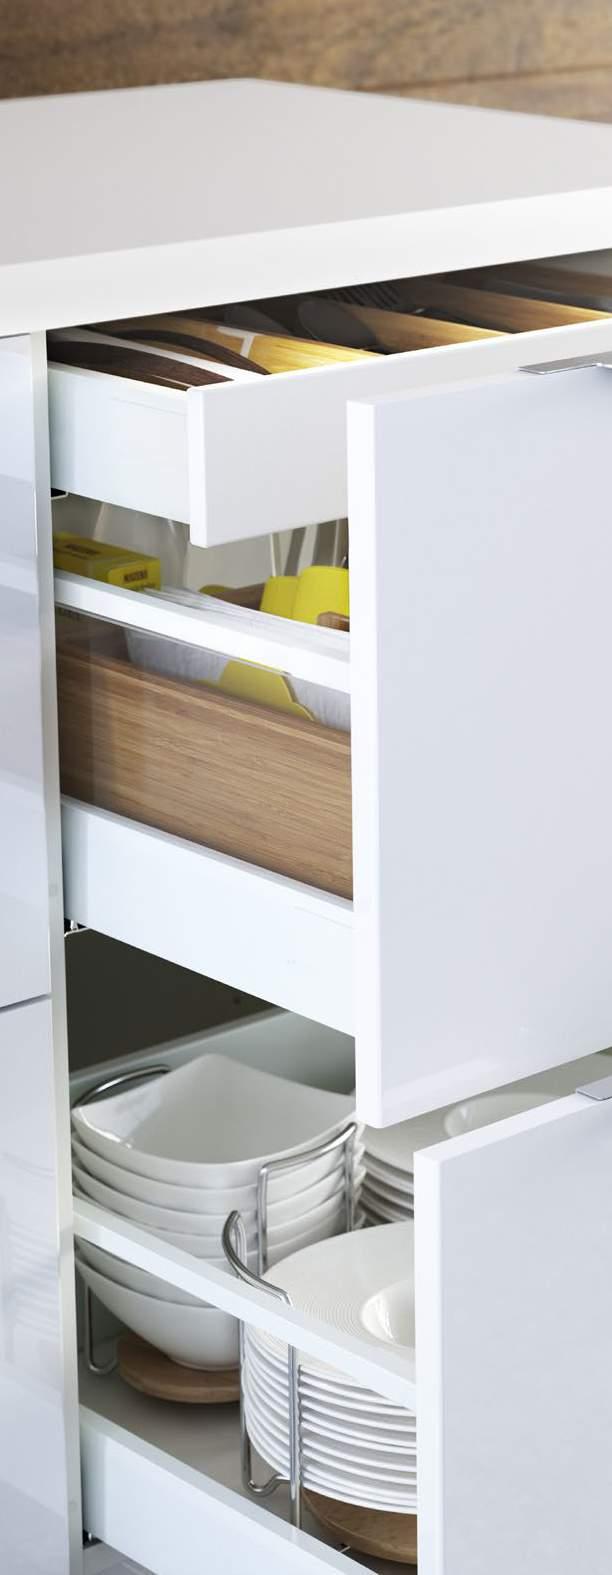 02 Nowa kuchnia dopasowana do twojego stylu życia Ta broszura to wygodny przewodnik po systemie mebli kuchennych IKEA.